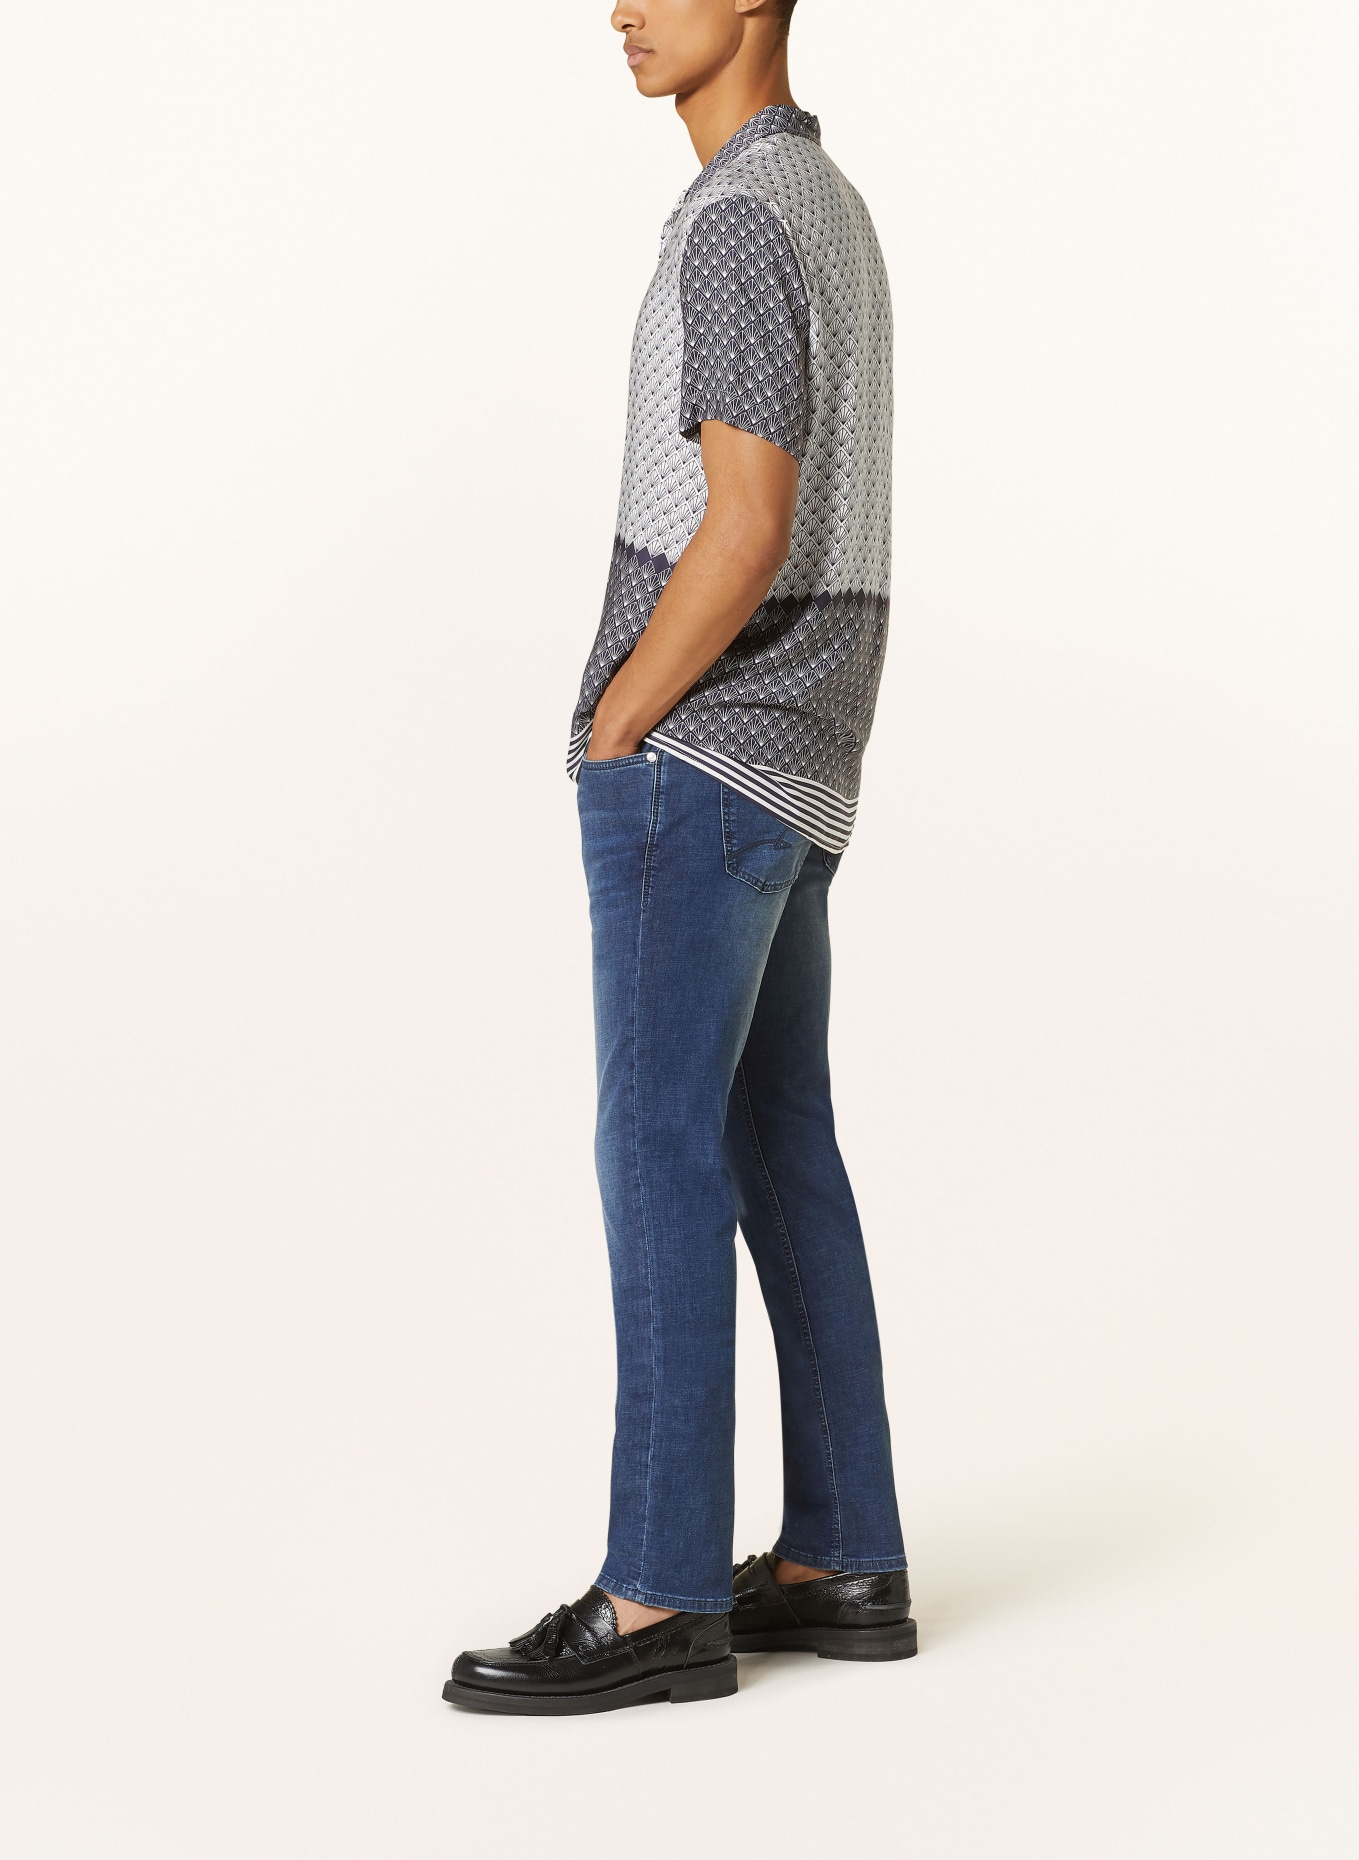 BALDESSARINI Jeans regular fit, Color: 6815 dark blue used whisker (Image 4)